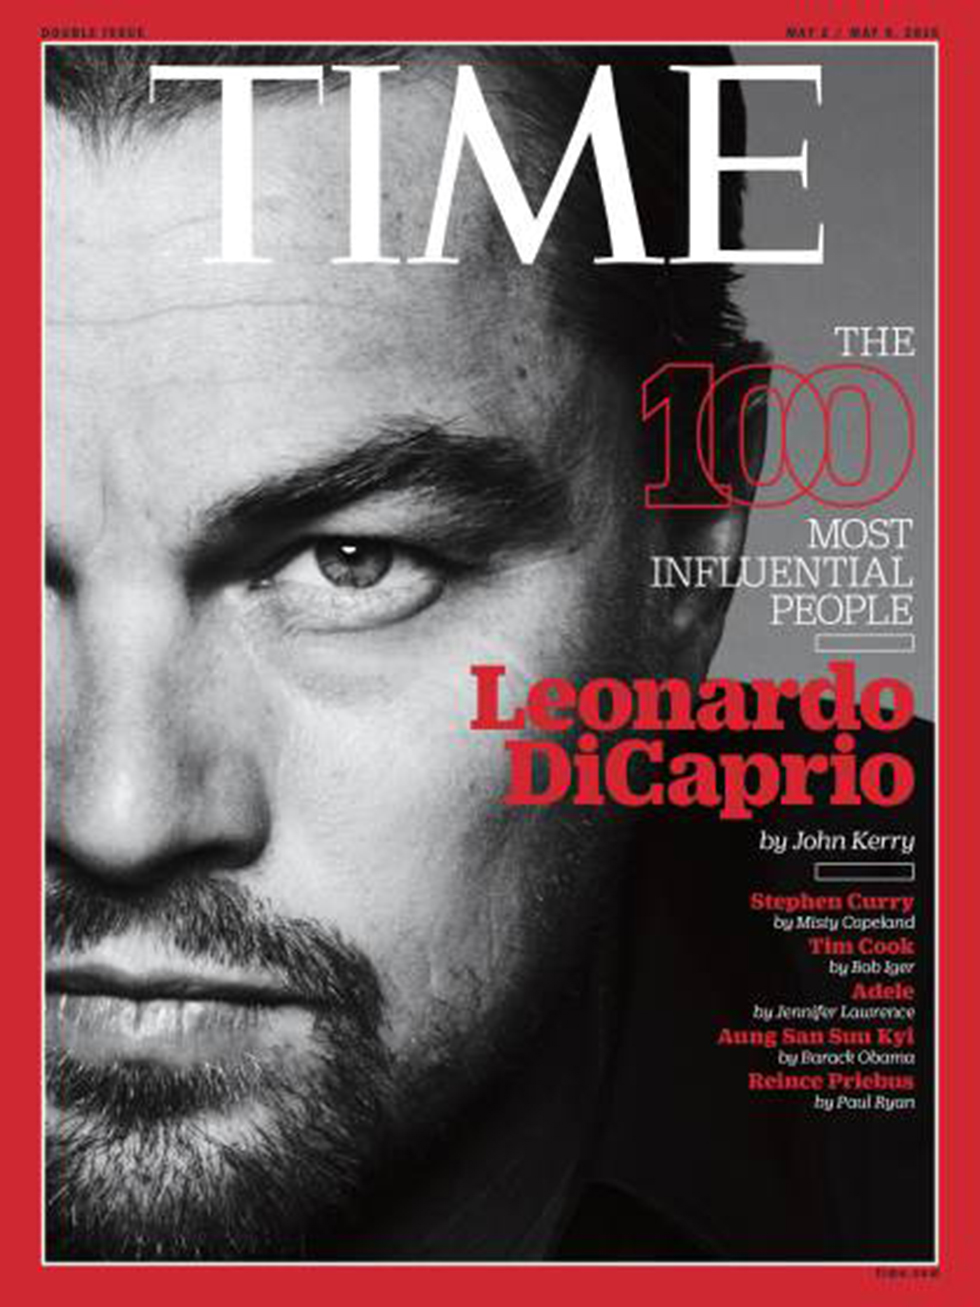 דיקפריו על שער מגזין "טיים". אחד משישה שערים שהוציא המגזין (צילום: TIME) (צילום: TIME)